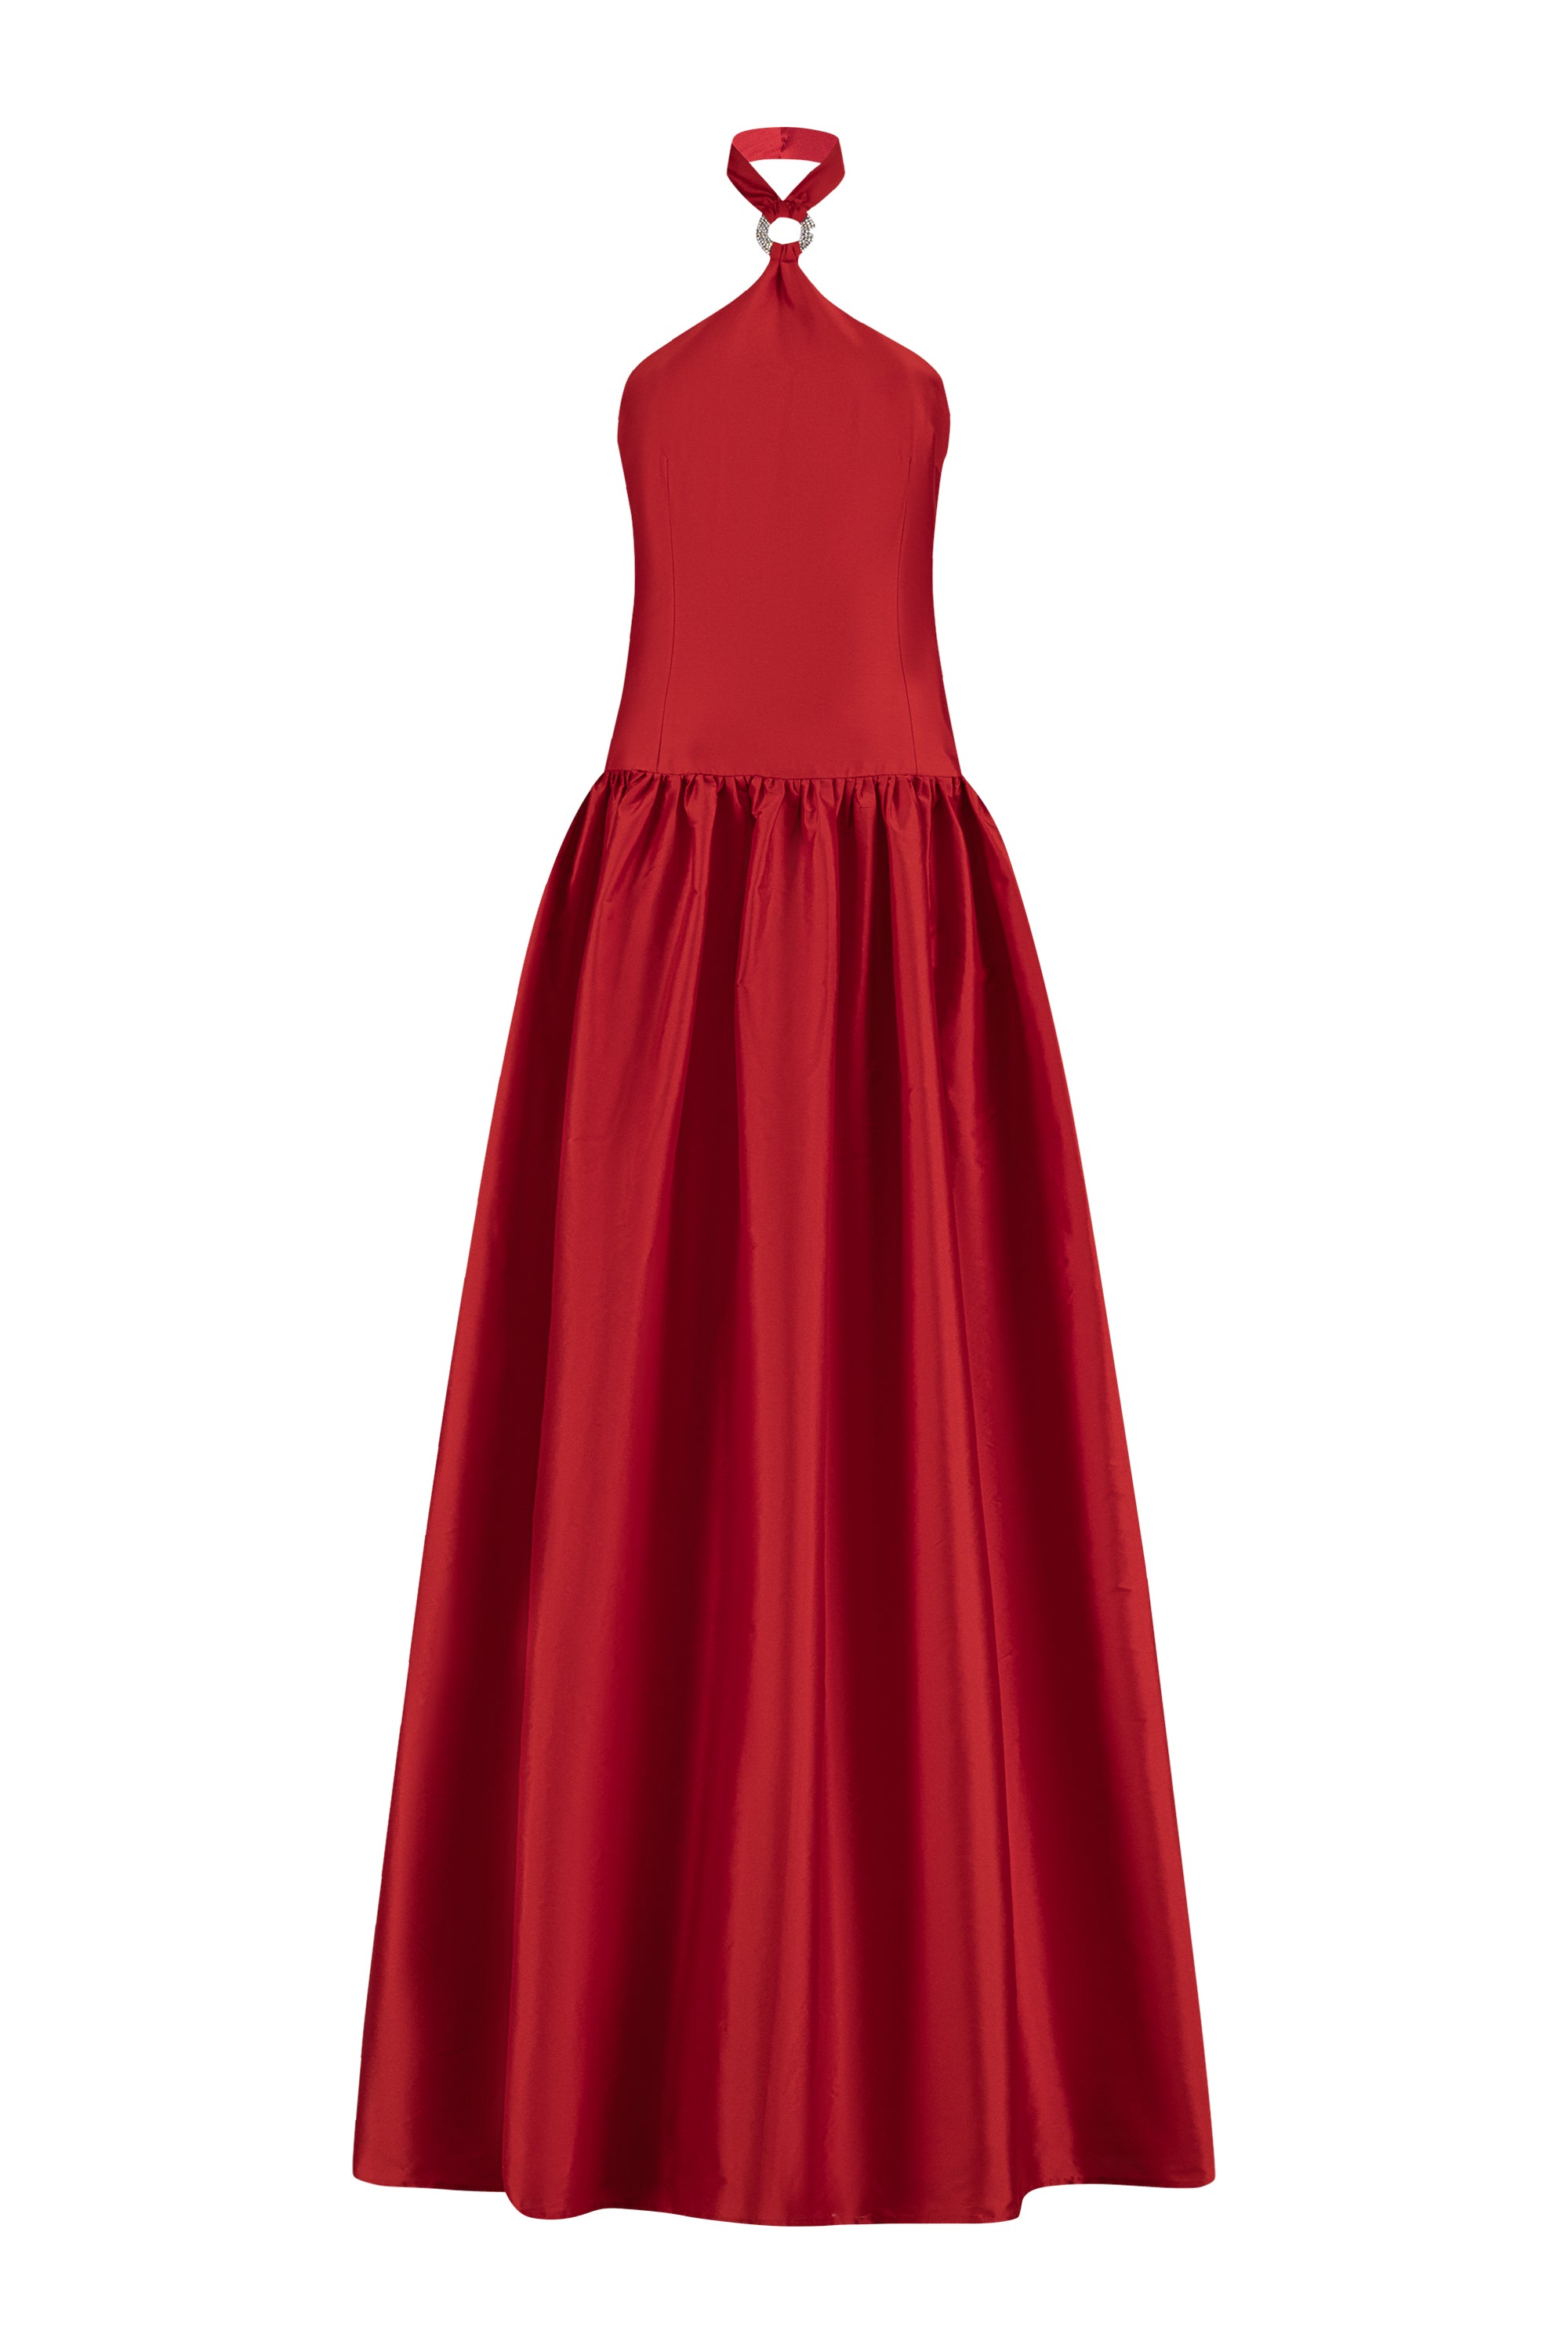 Sonnet Dress Red